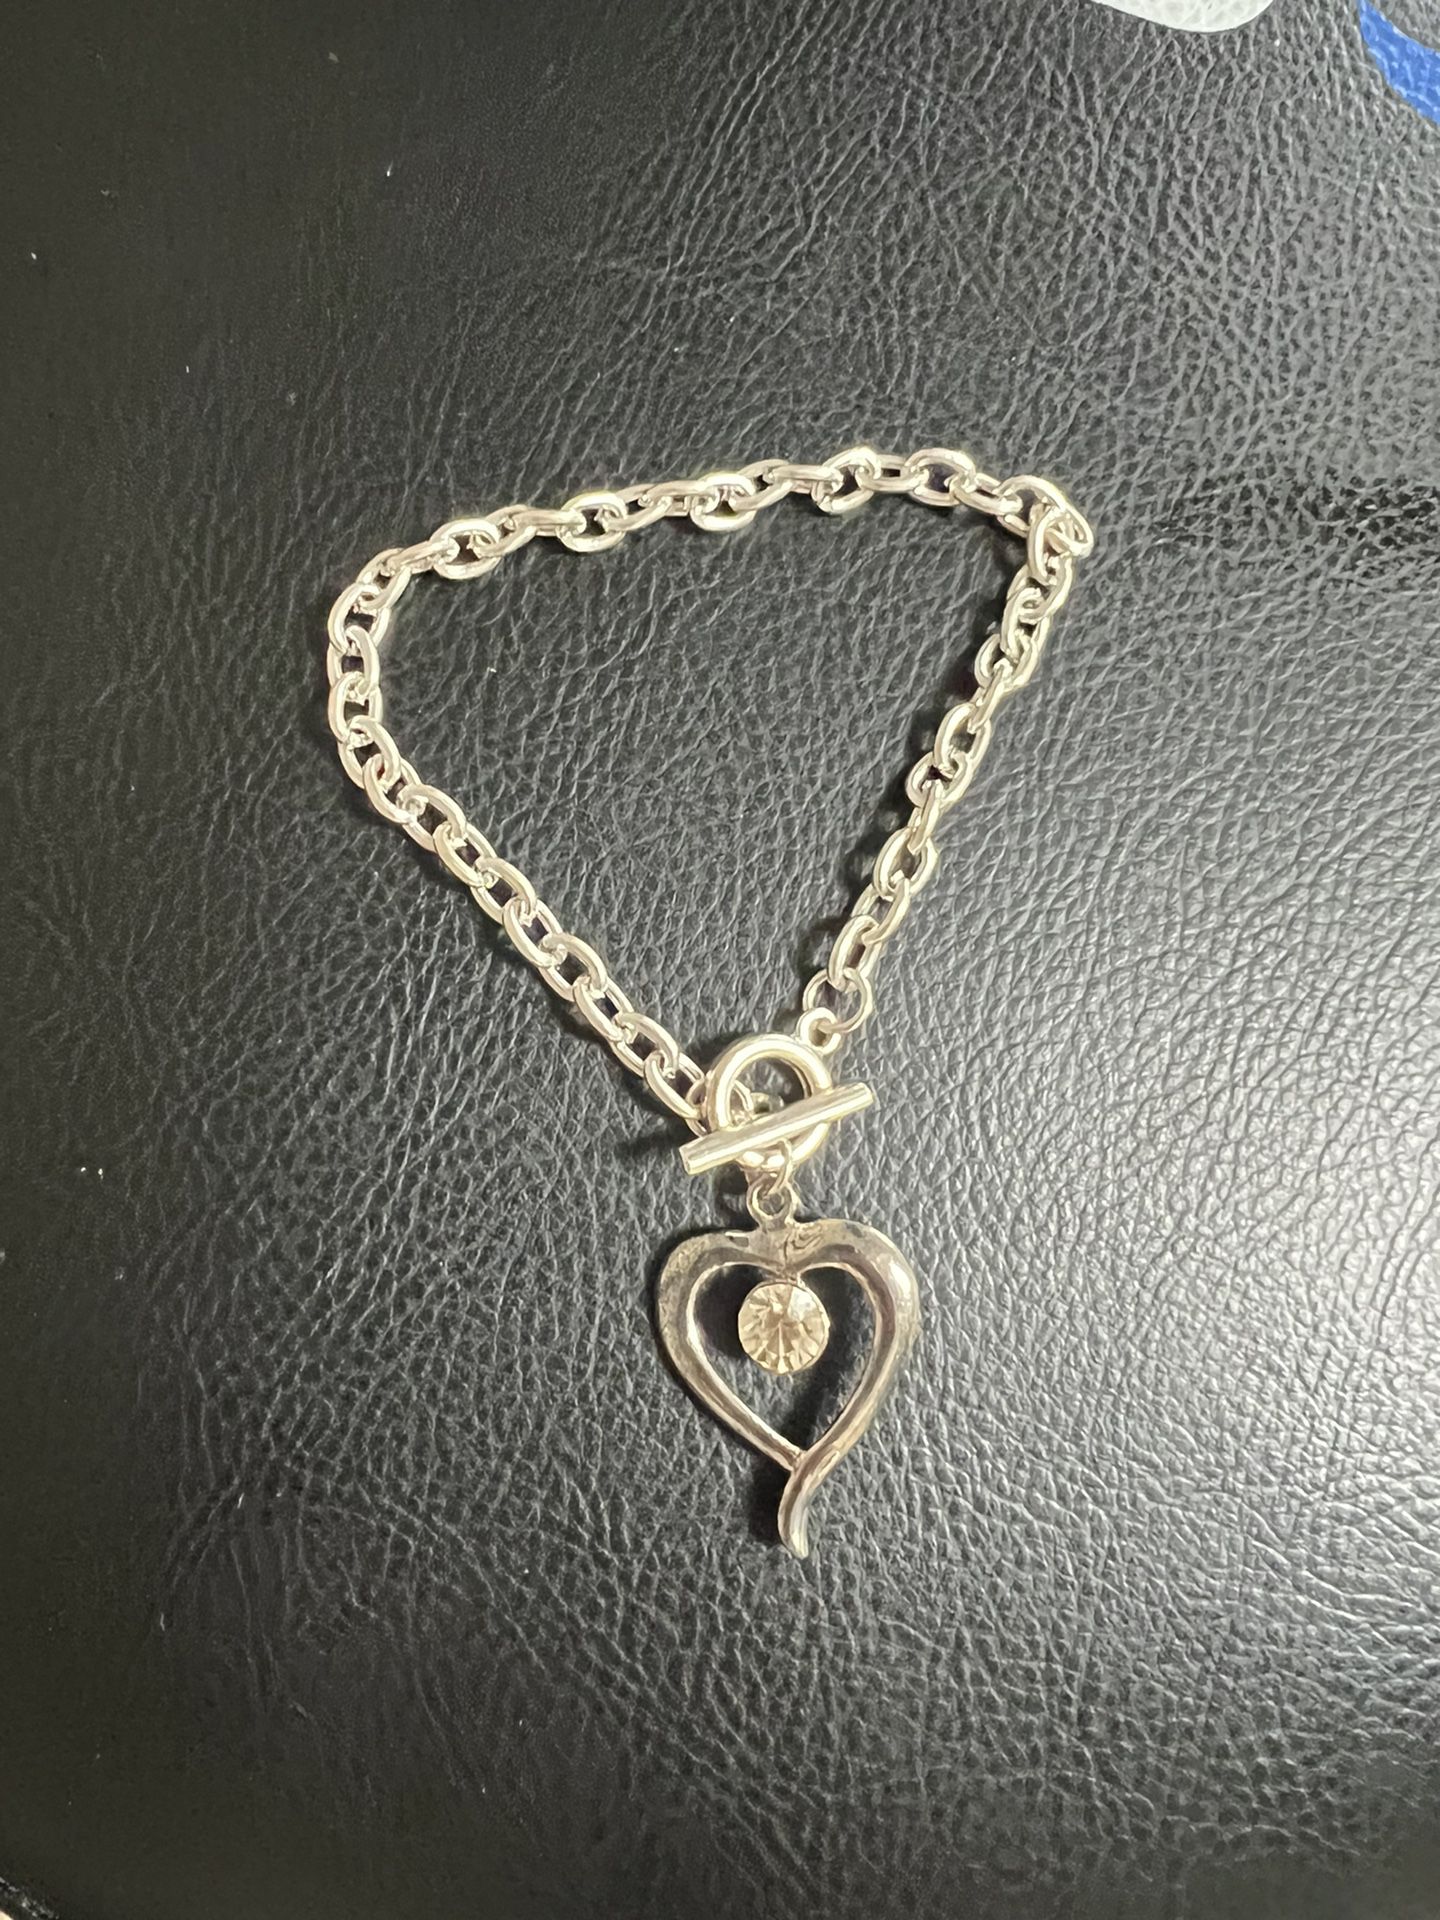 New Heart Chain Bracelet - Silver